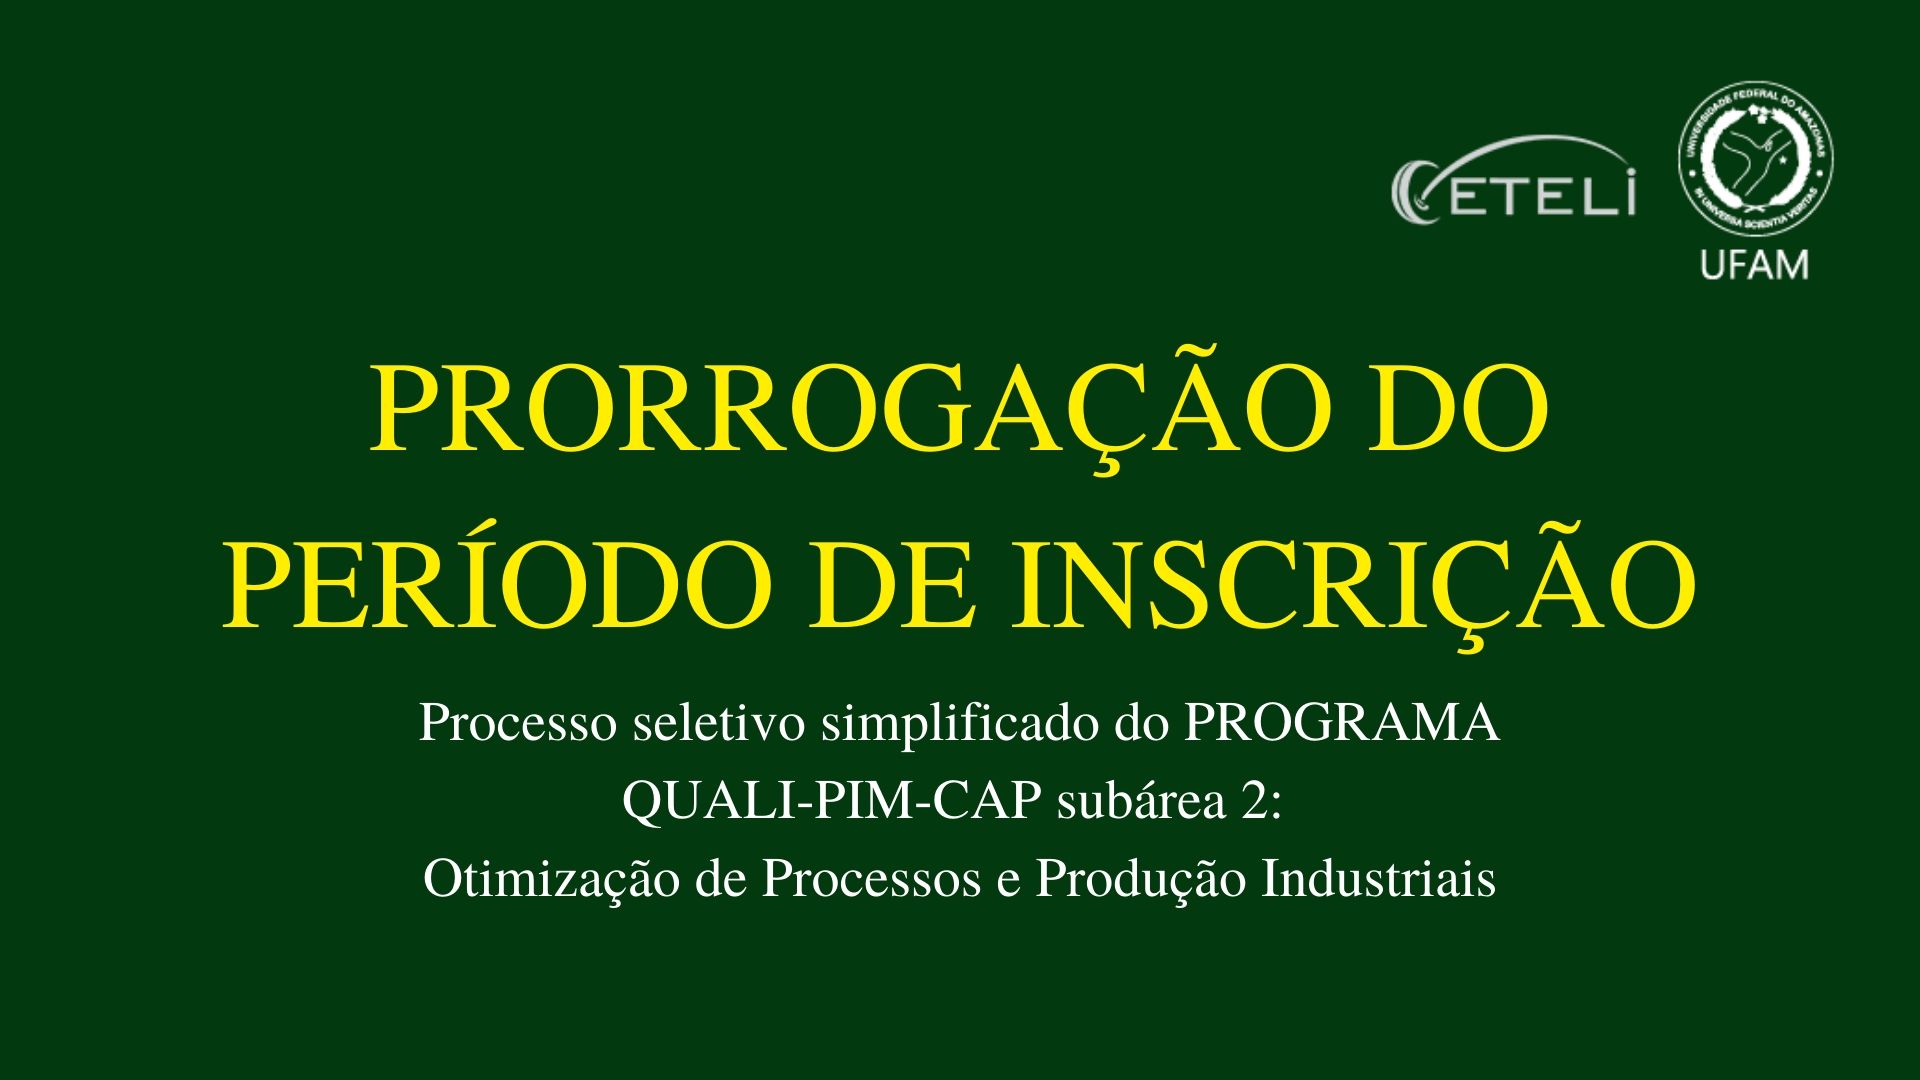 INSCRIÇÕES PRORROGADAS DO PROCESSO SELETIVO QUALI-PIM-CAP - MARÇO DE 2020